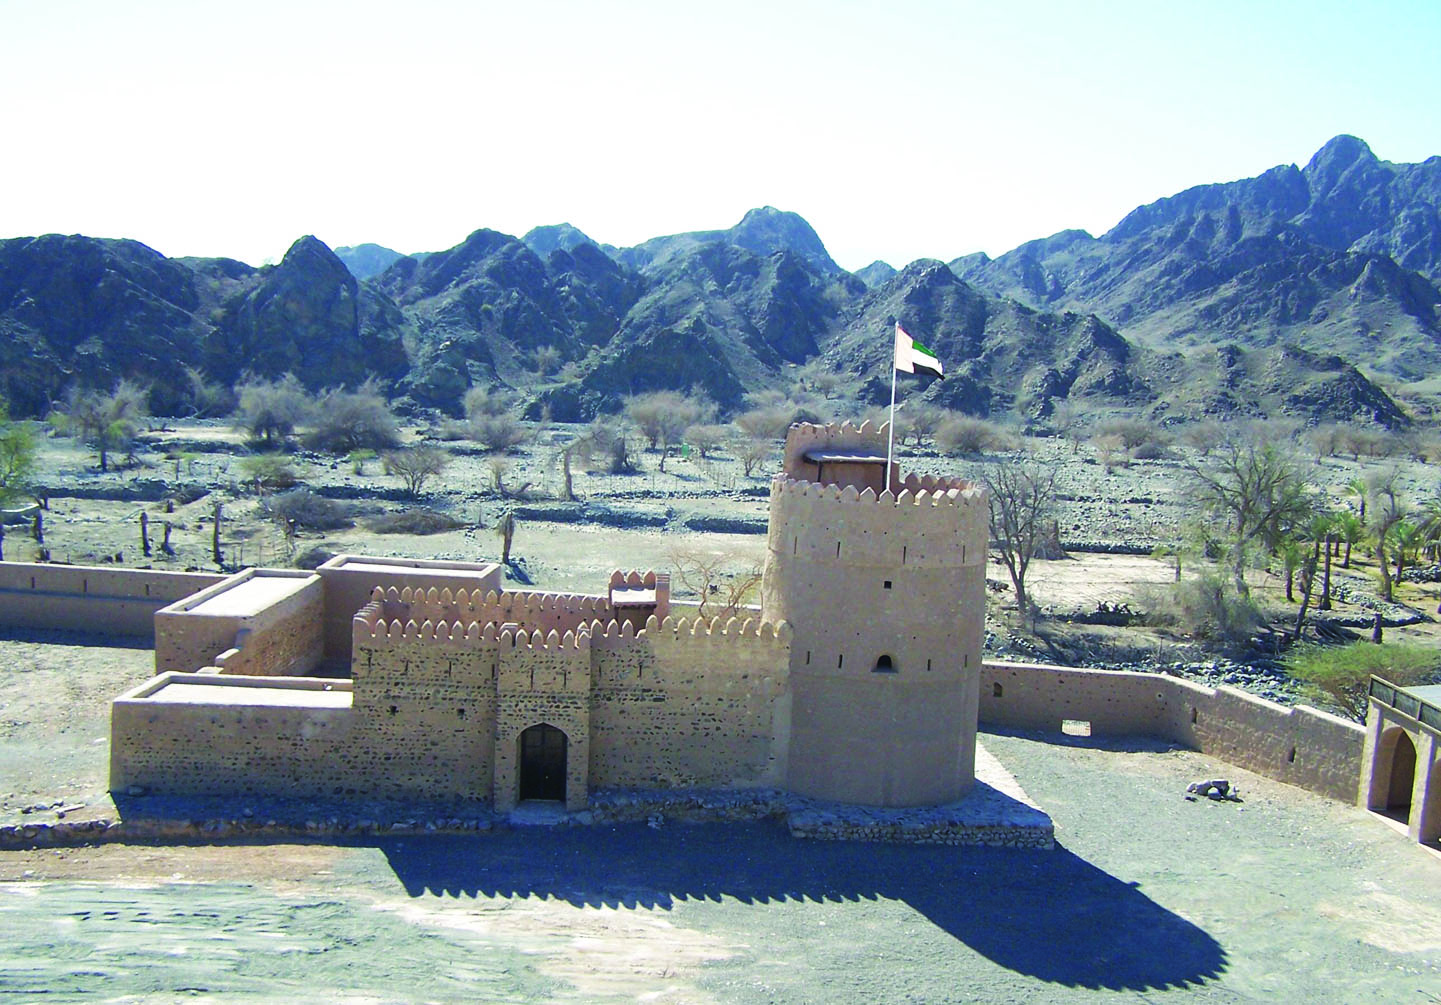 Awhala Fort